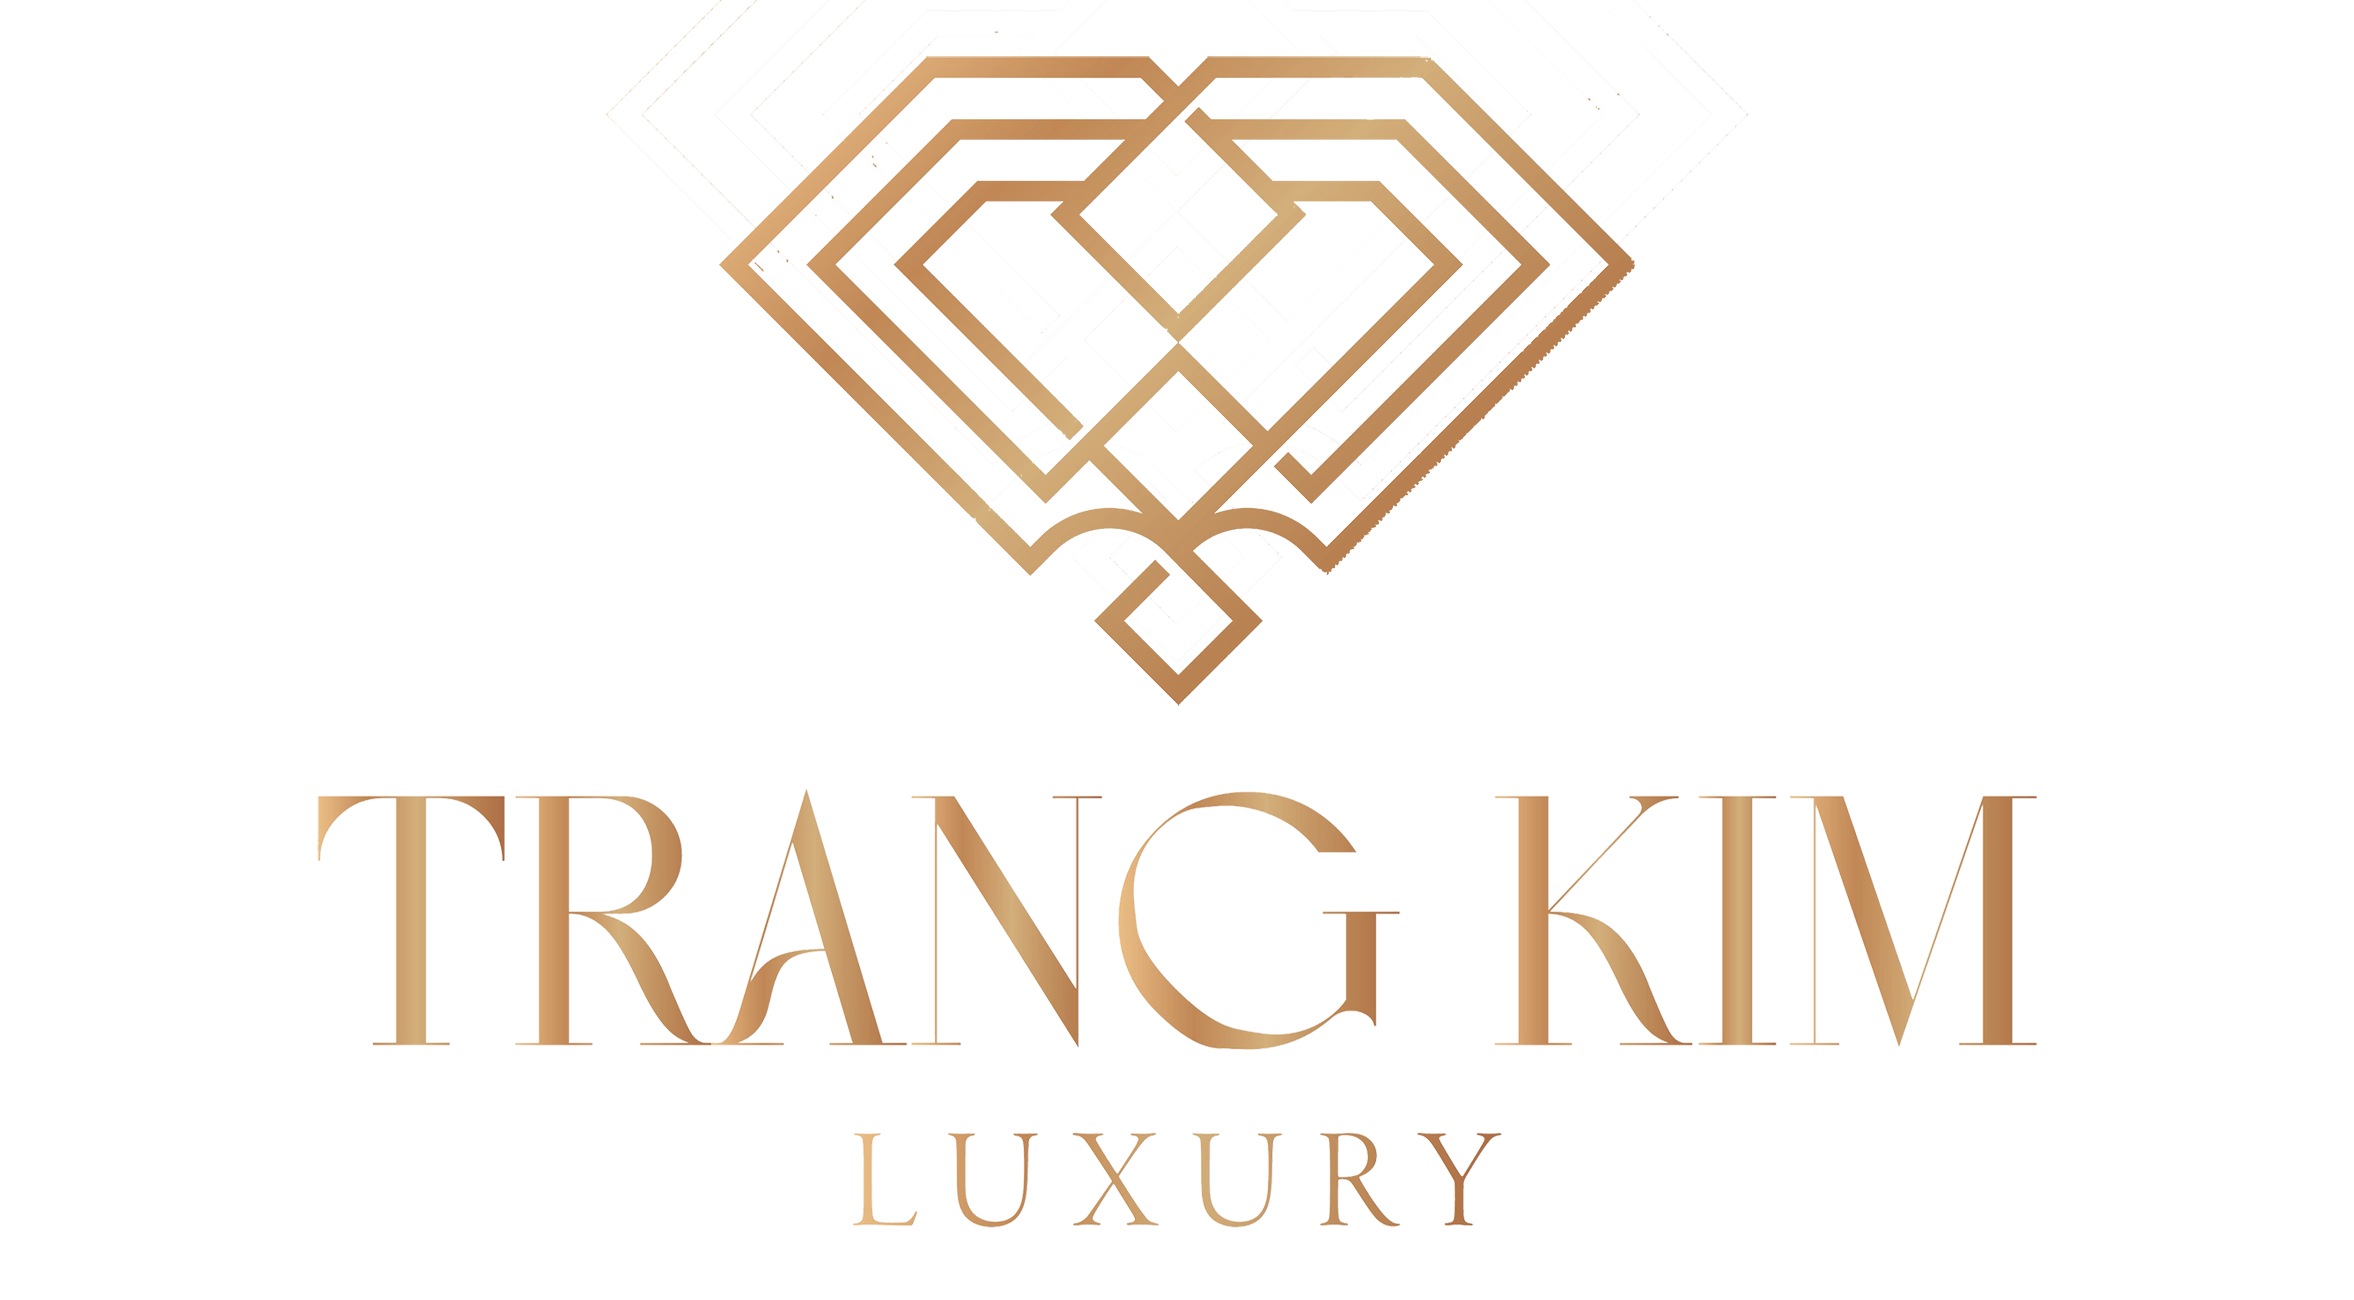 Trang Kim Luxury